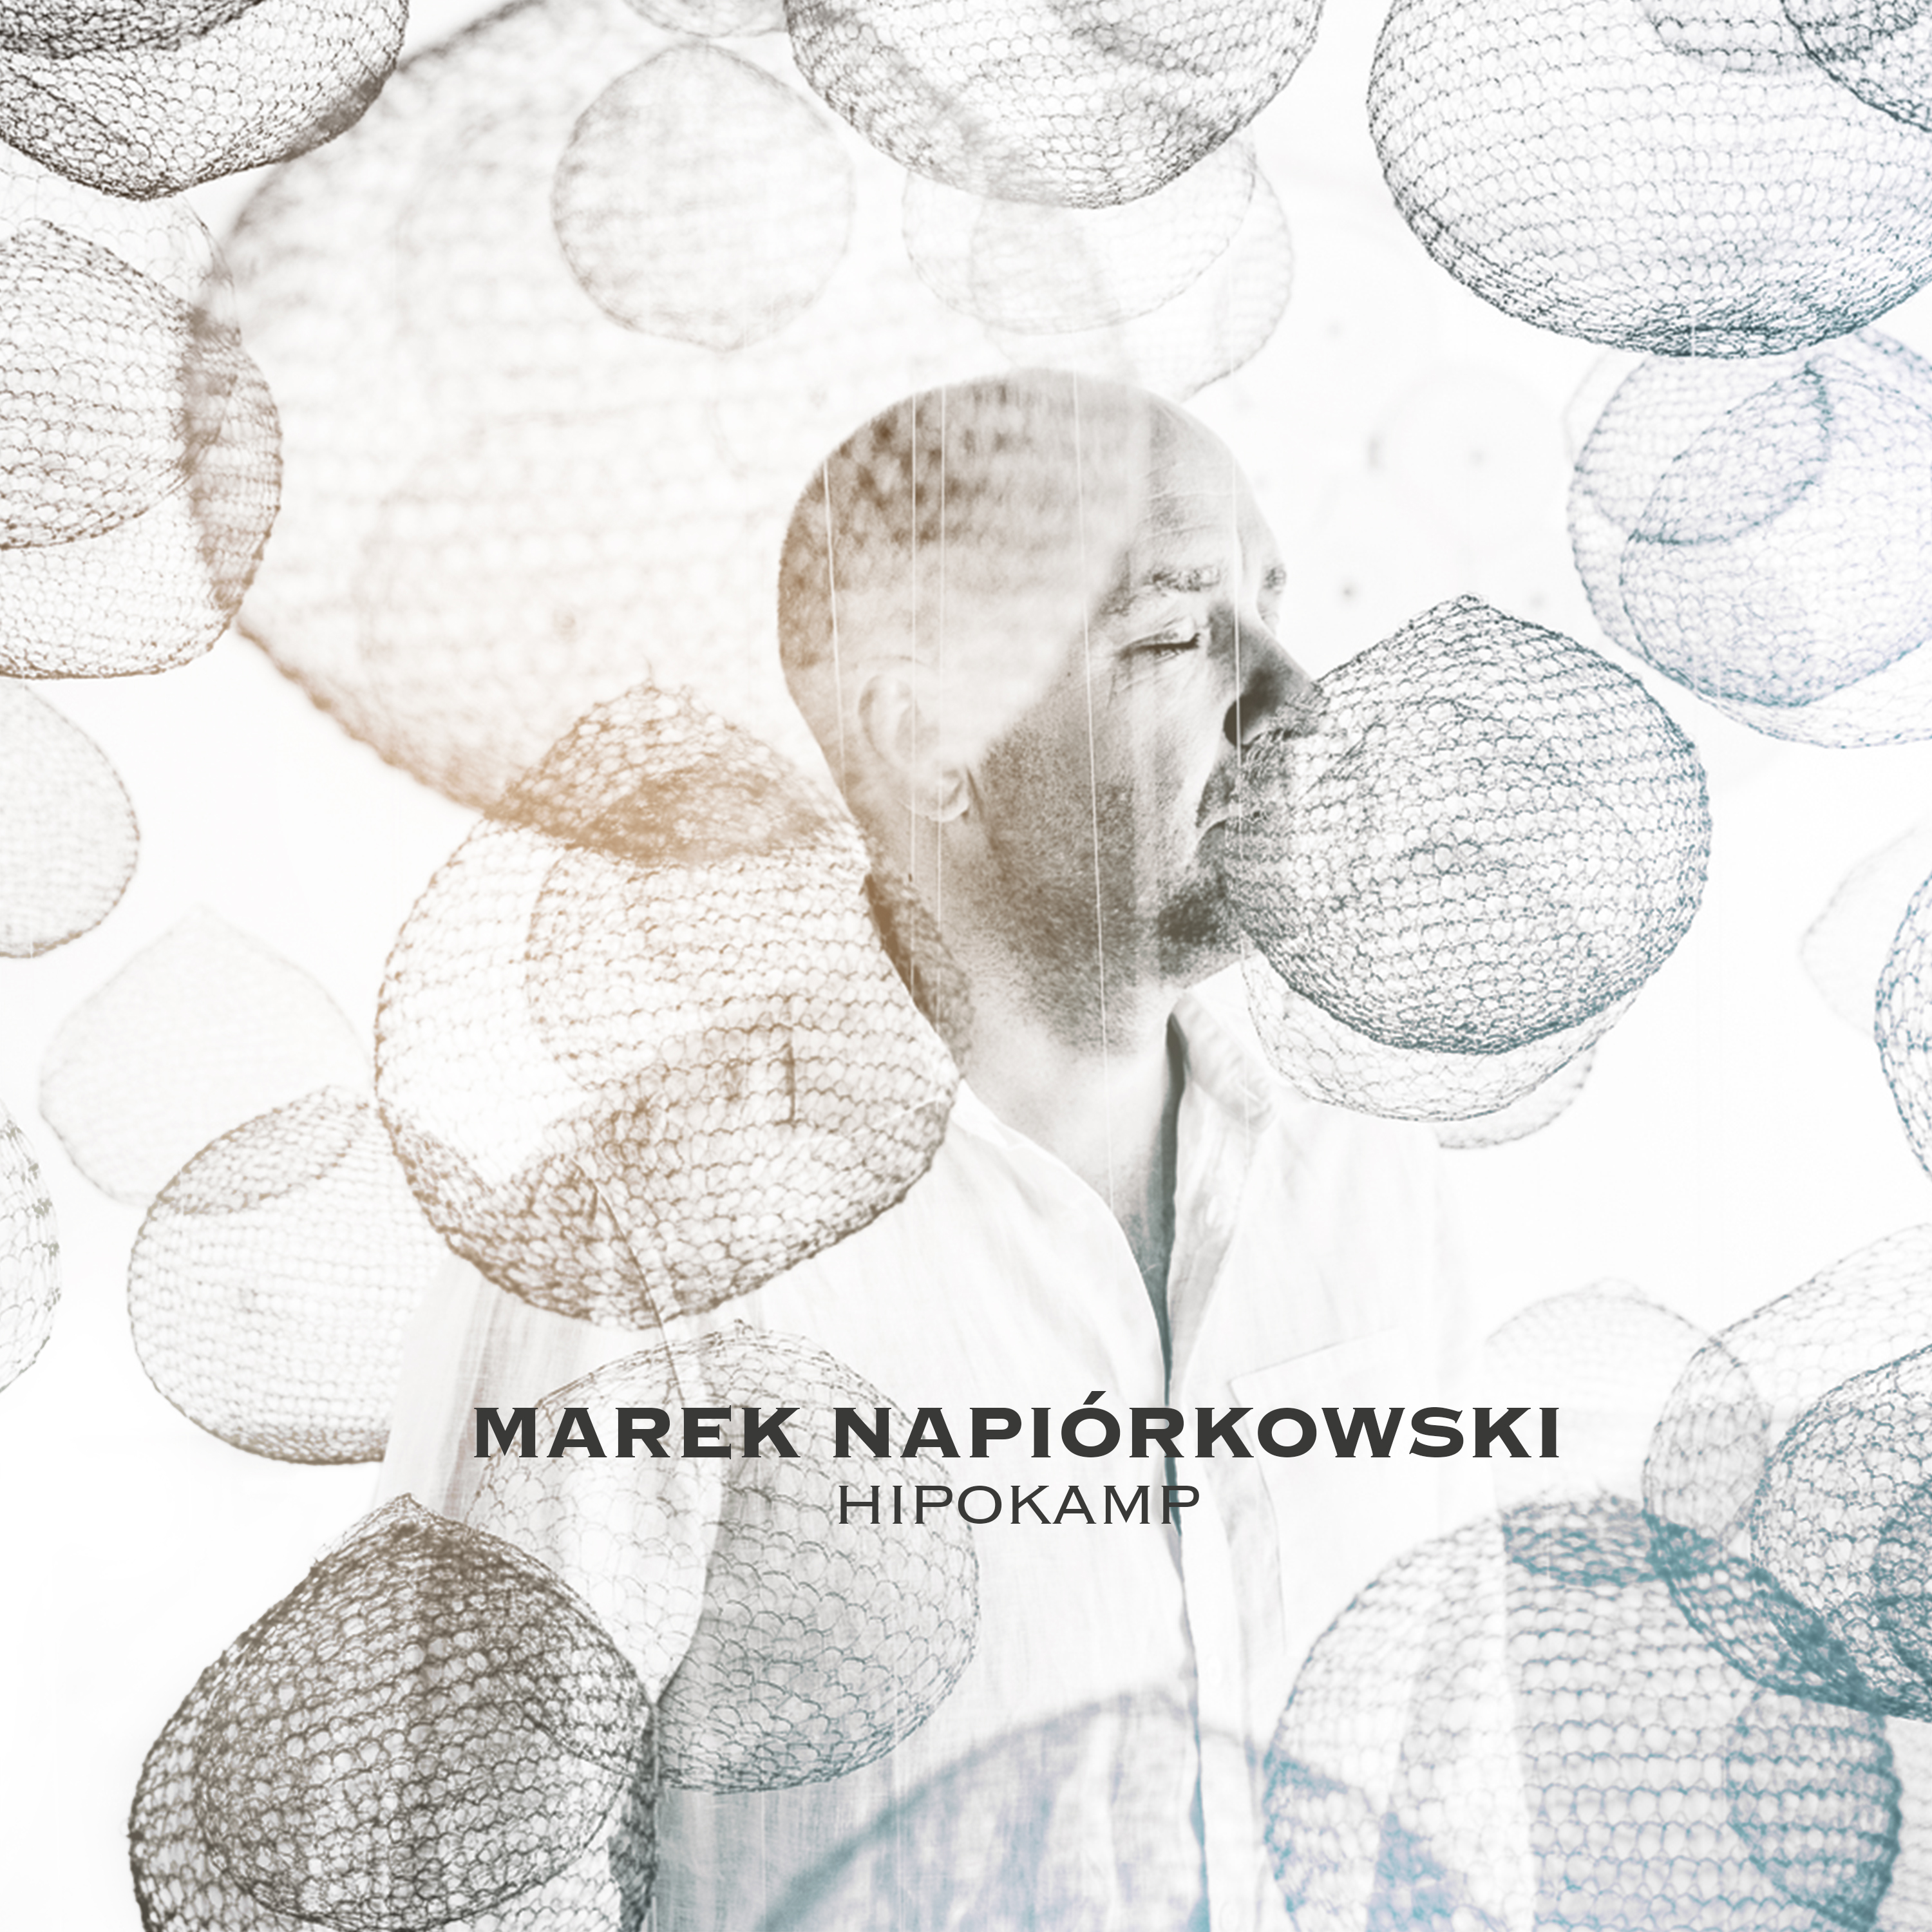 Marek Napiórkowski prezentuje nowy klip i rusza w trasę koncertową